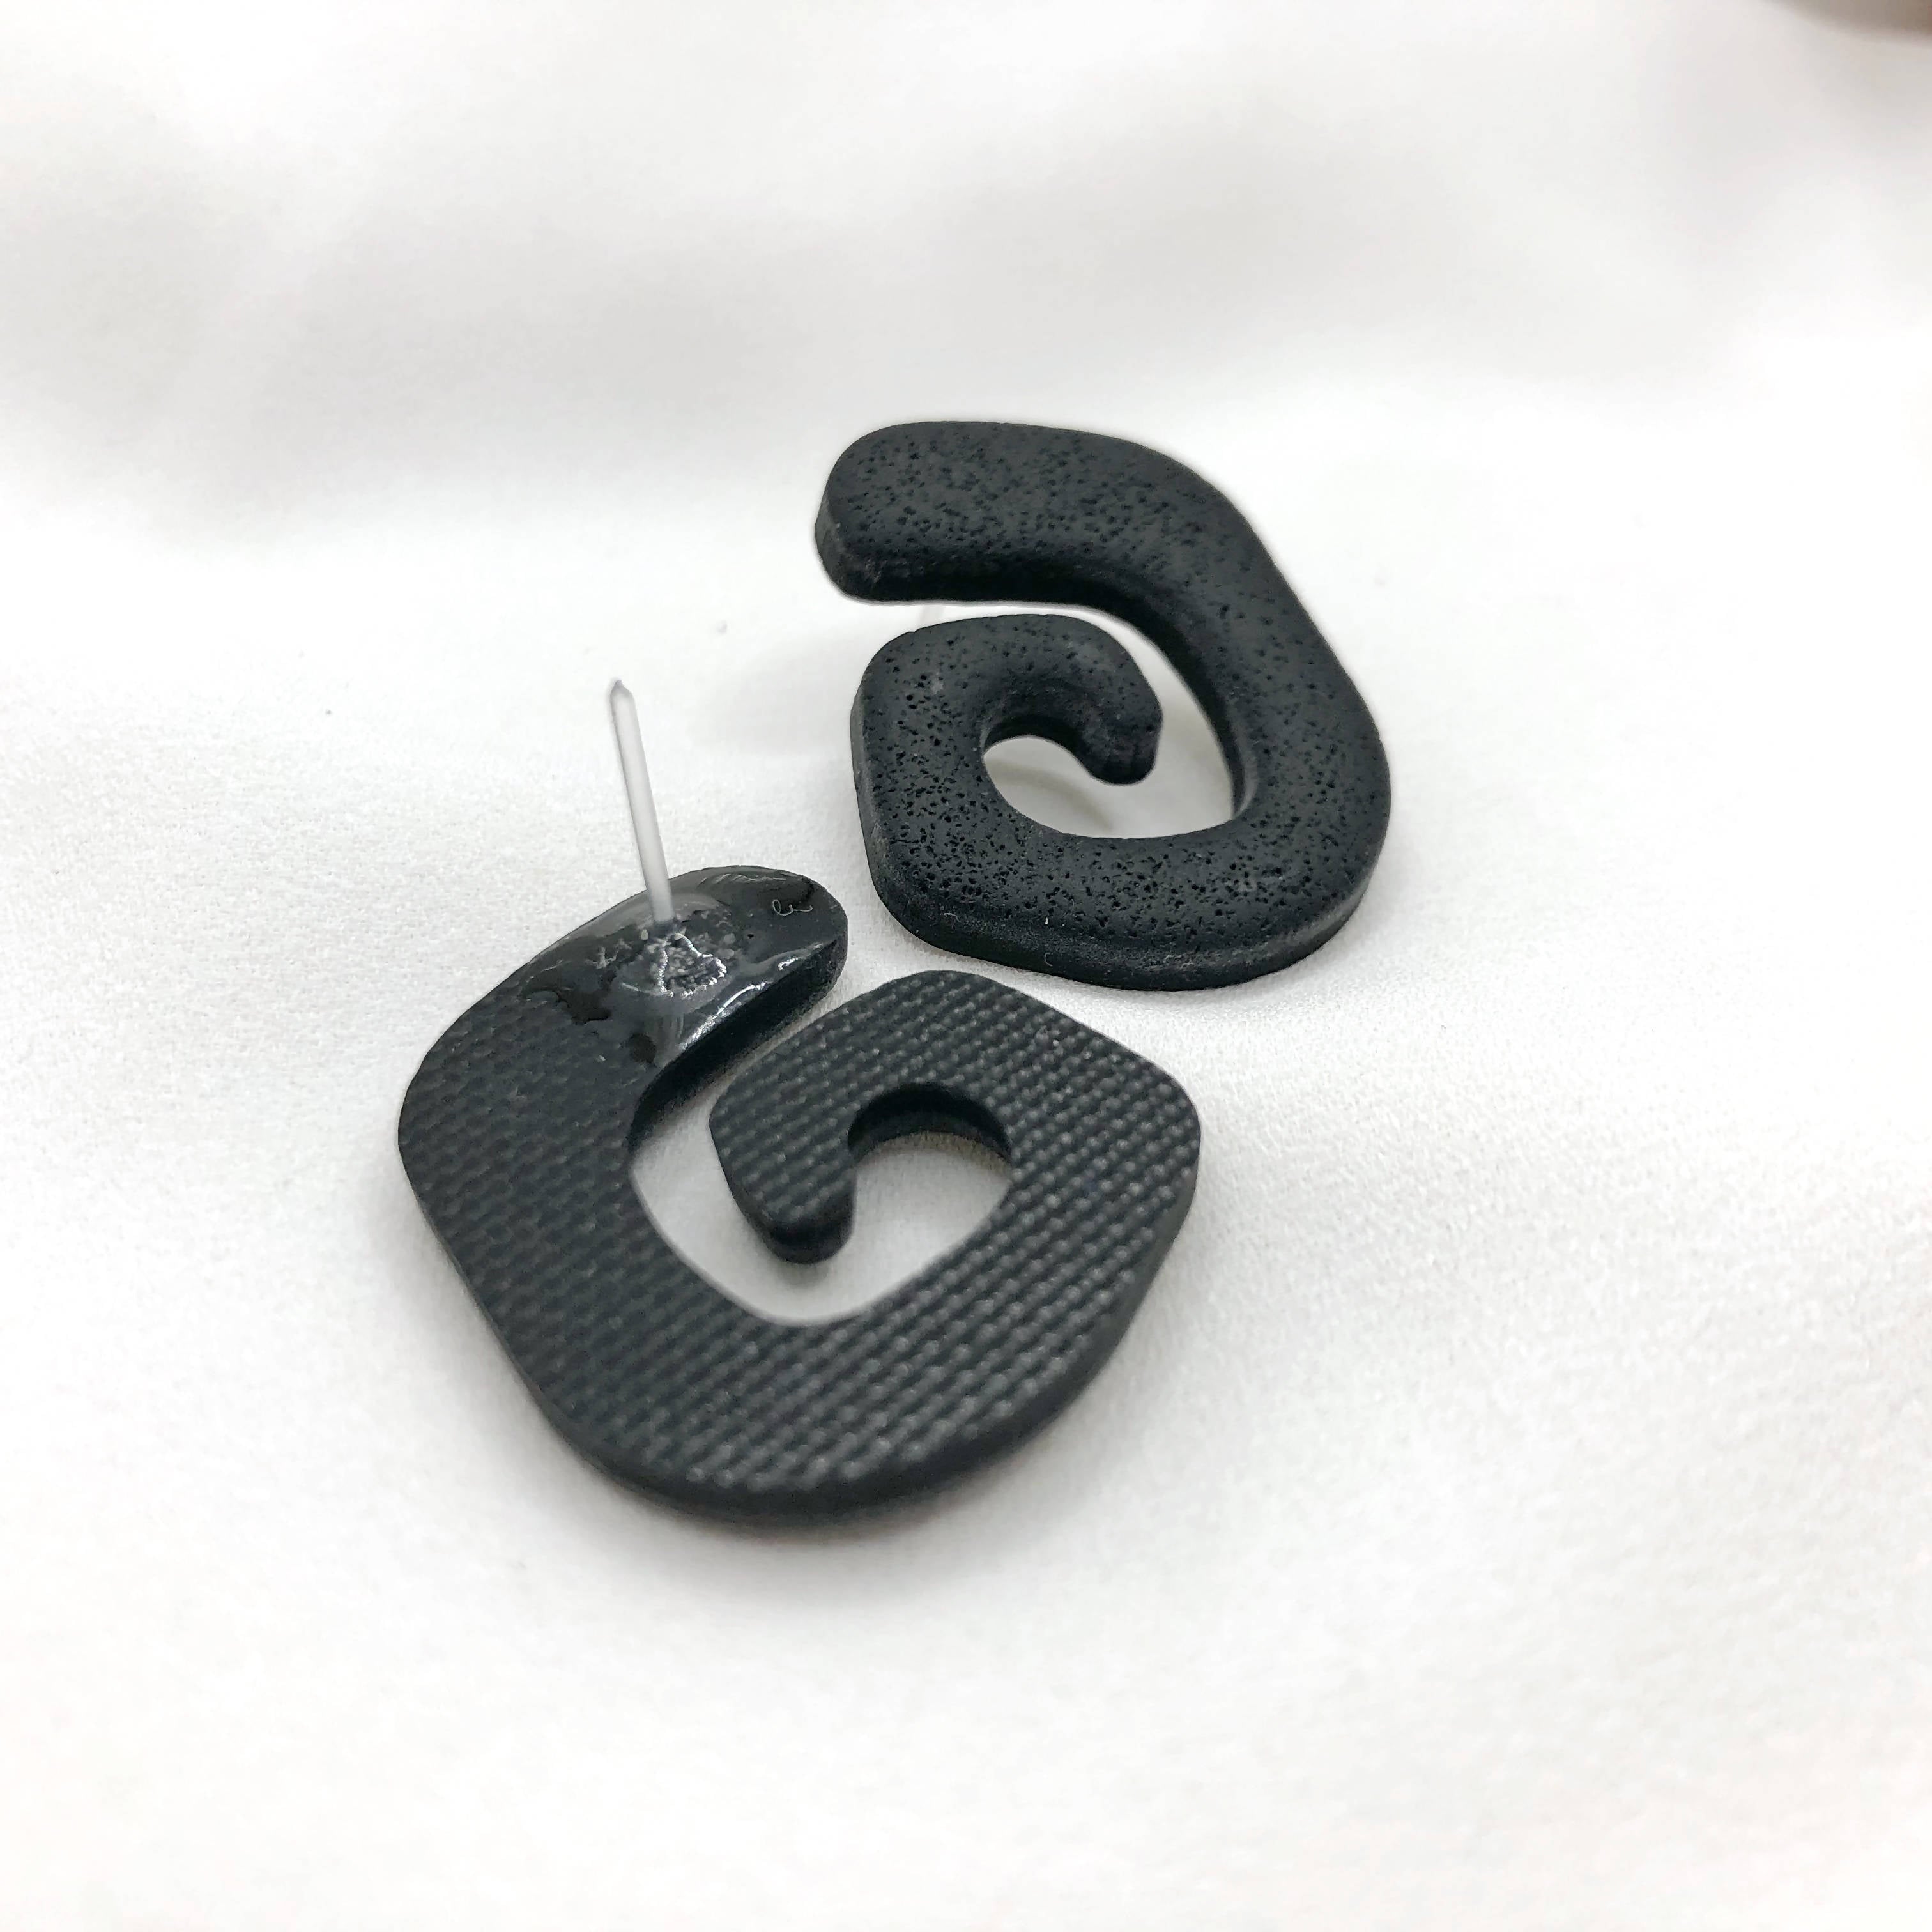 Deep Black Handmade Polymer Clay Earrings - Stylish Earbacks - Nikel Free - Wear Sierra